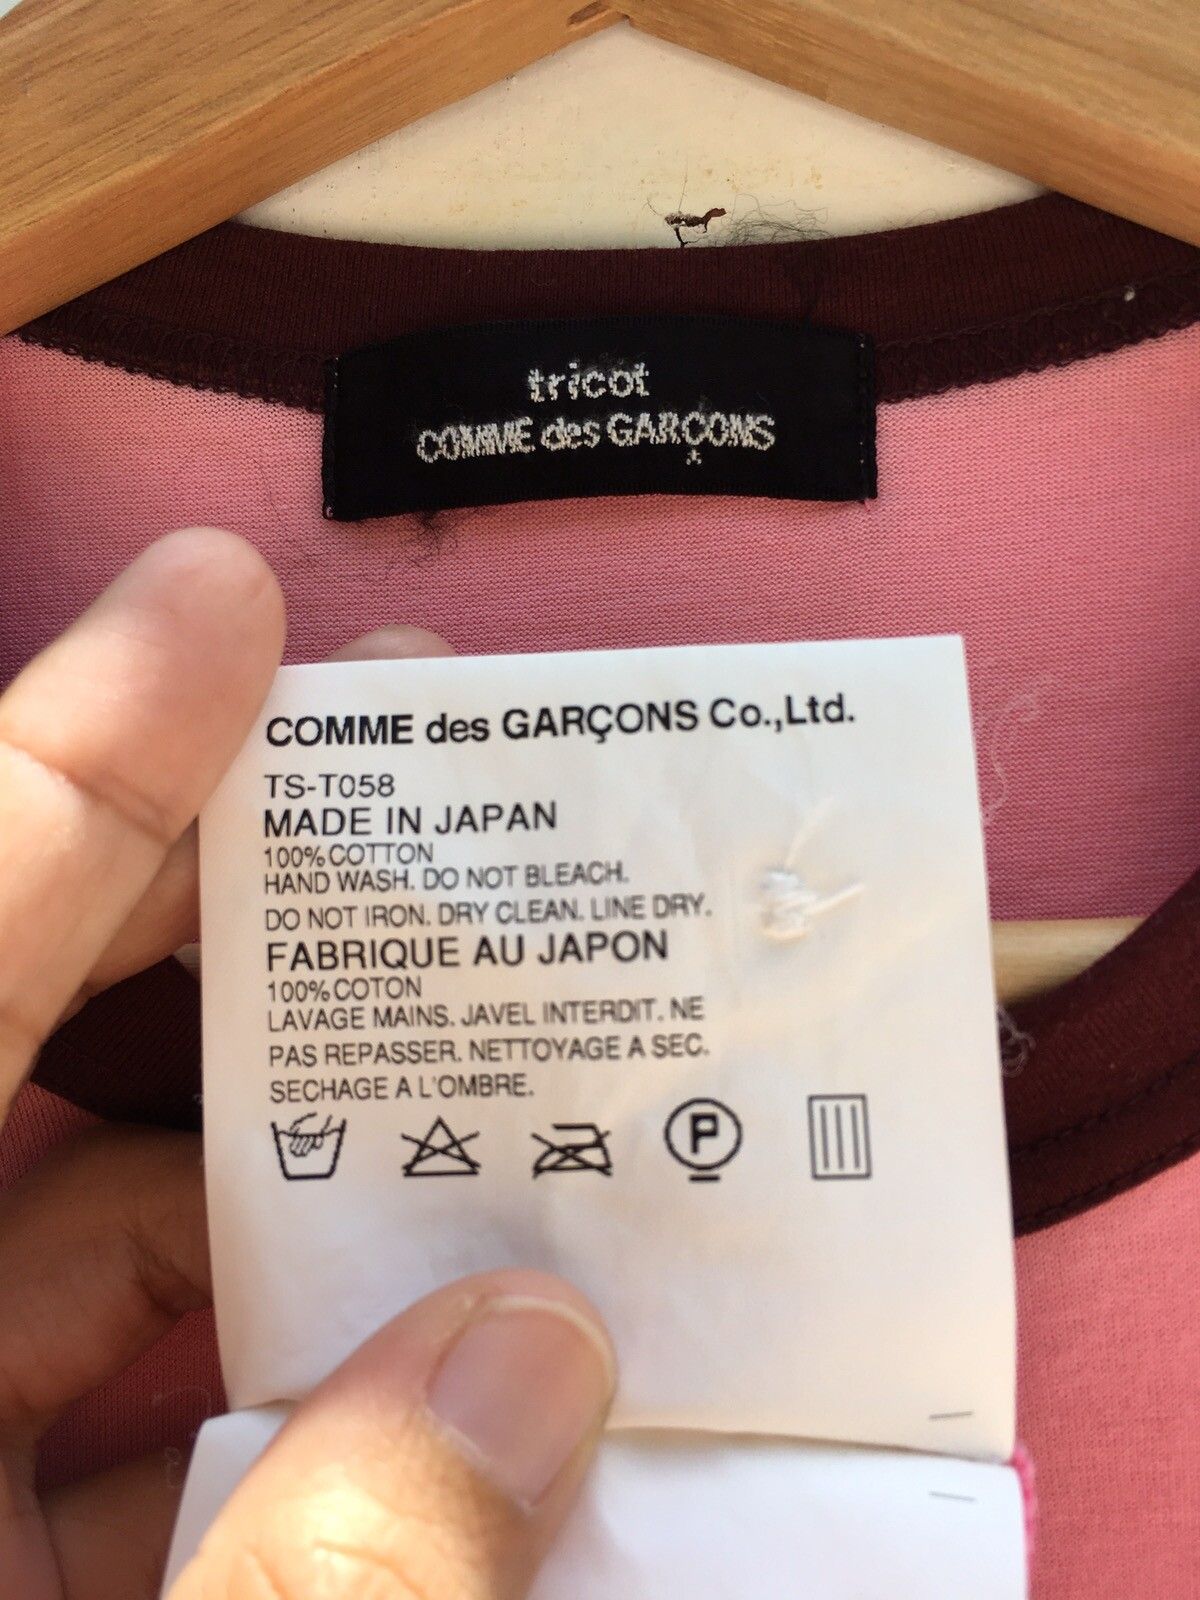 Comme des Garcons Rare Comme Des Garcons CDG tricot Buttons Shirt Size US S / EU 44-46 / 1 - 9 Thumbnail